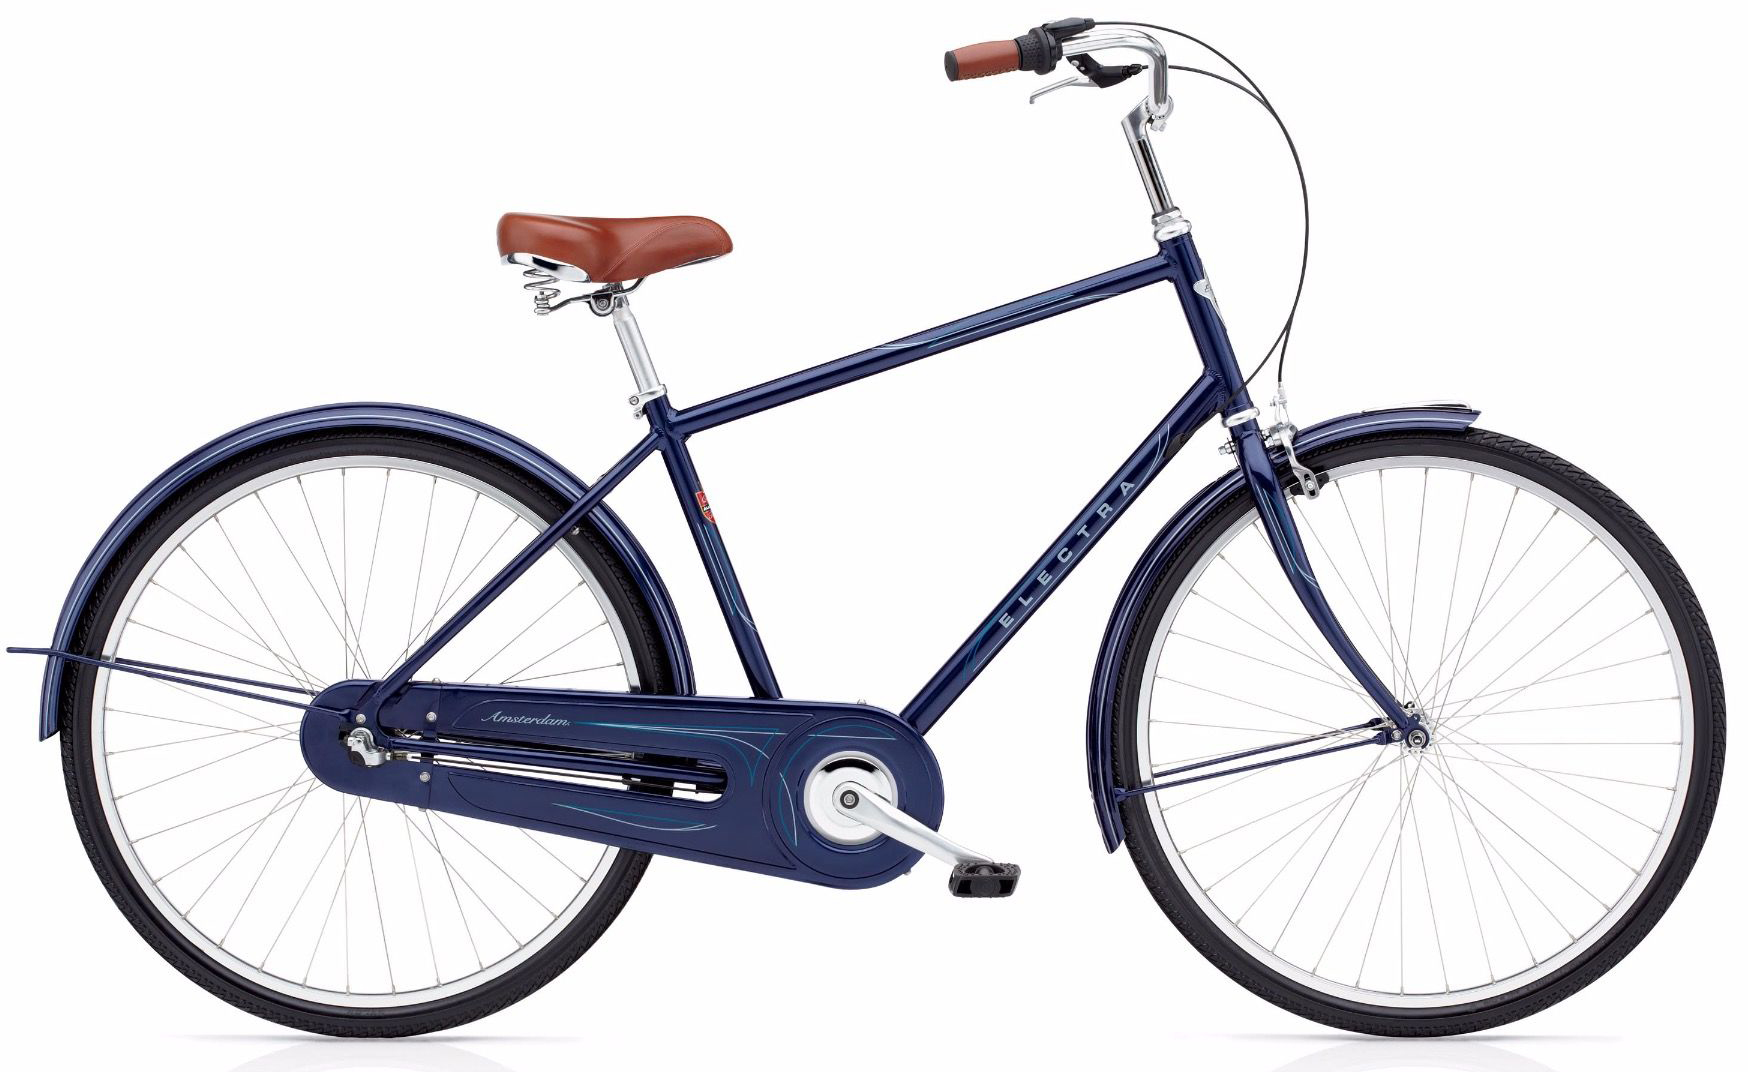  Велосипед Electra Amsterdam Original 3i Men's 2019